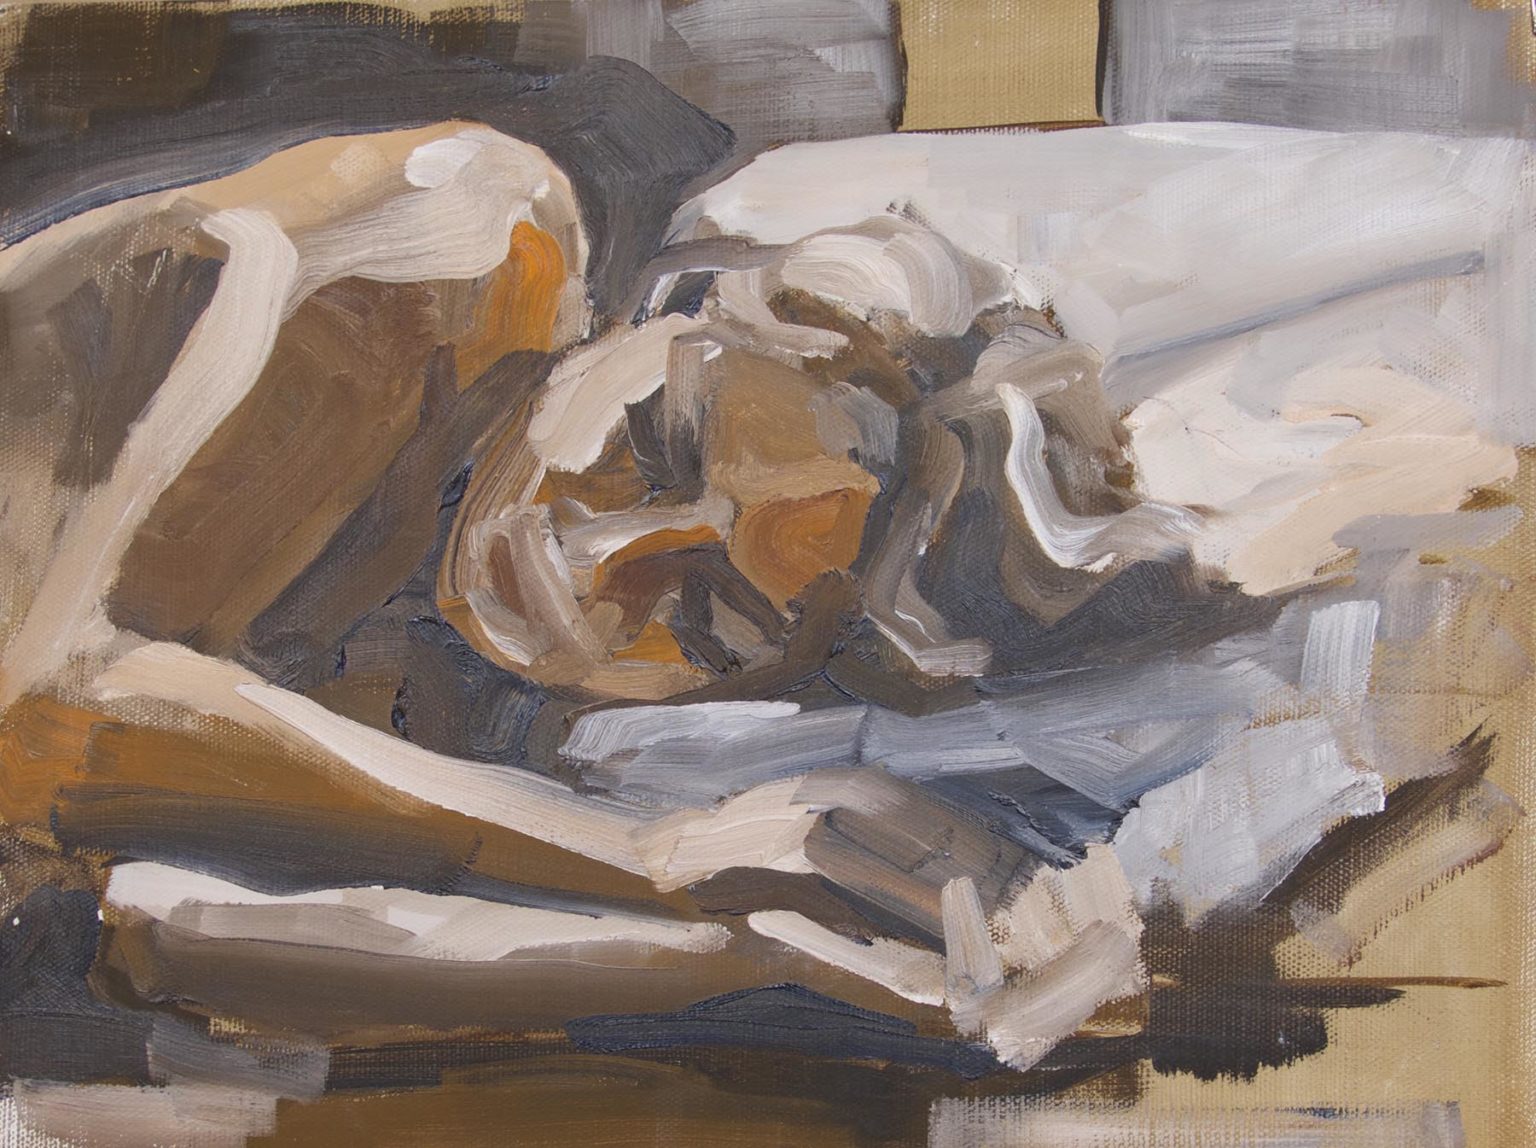 Sleeping | Oil on linen board, 30cm x 40cm